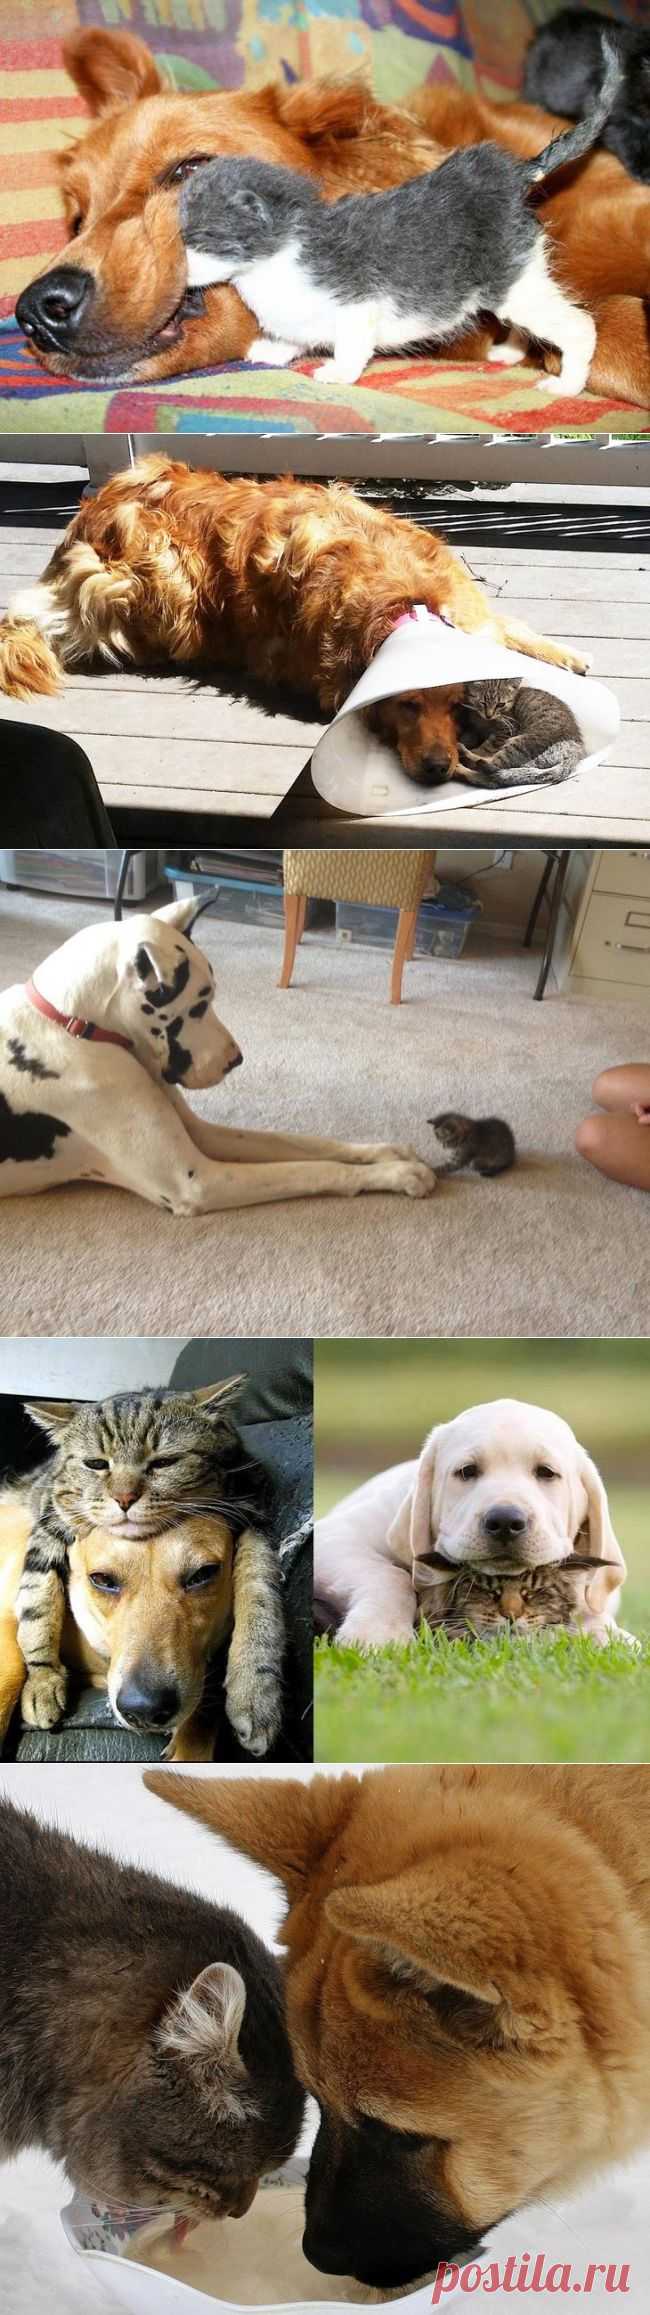 Как кошка с собакой... дружат....